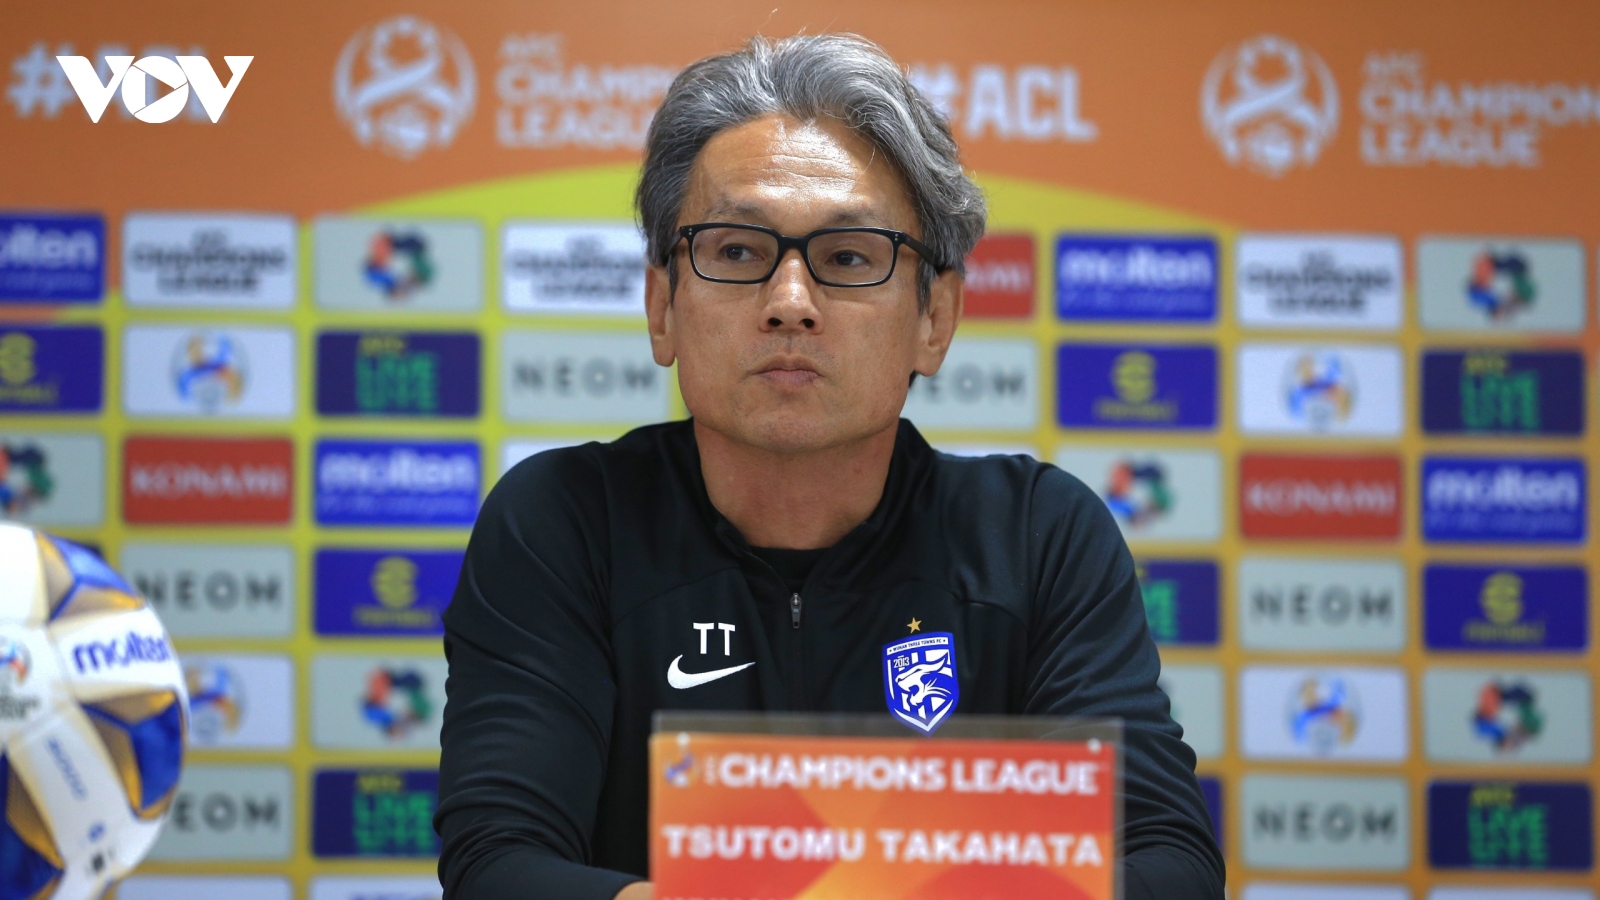 HLV Wuhan nói điều bất ngờ về Hà Nội FC trước trận đấu ở Cúp C1 Châu Á